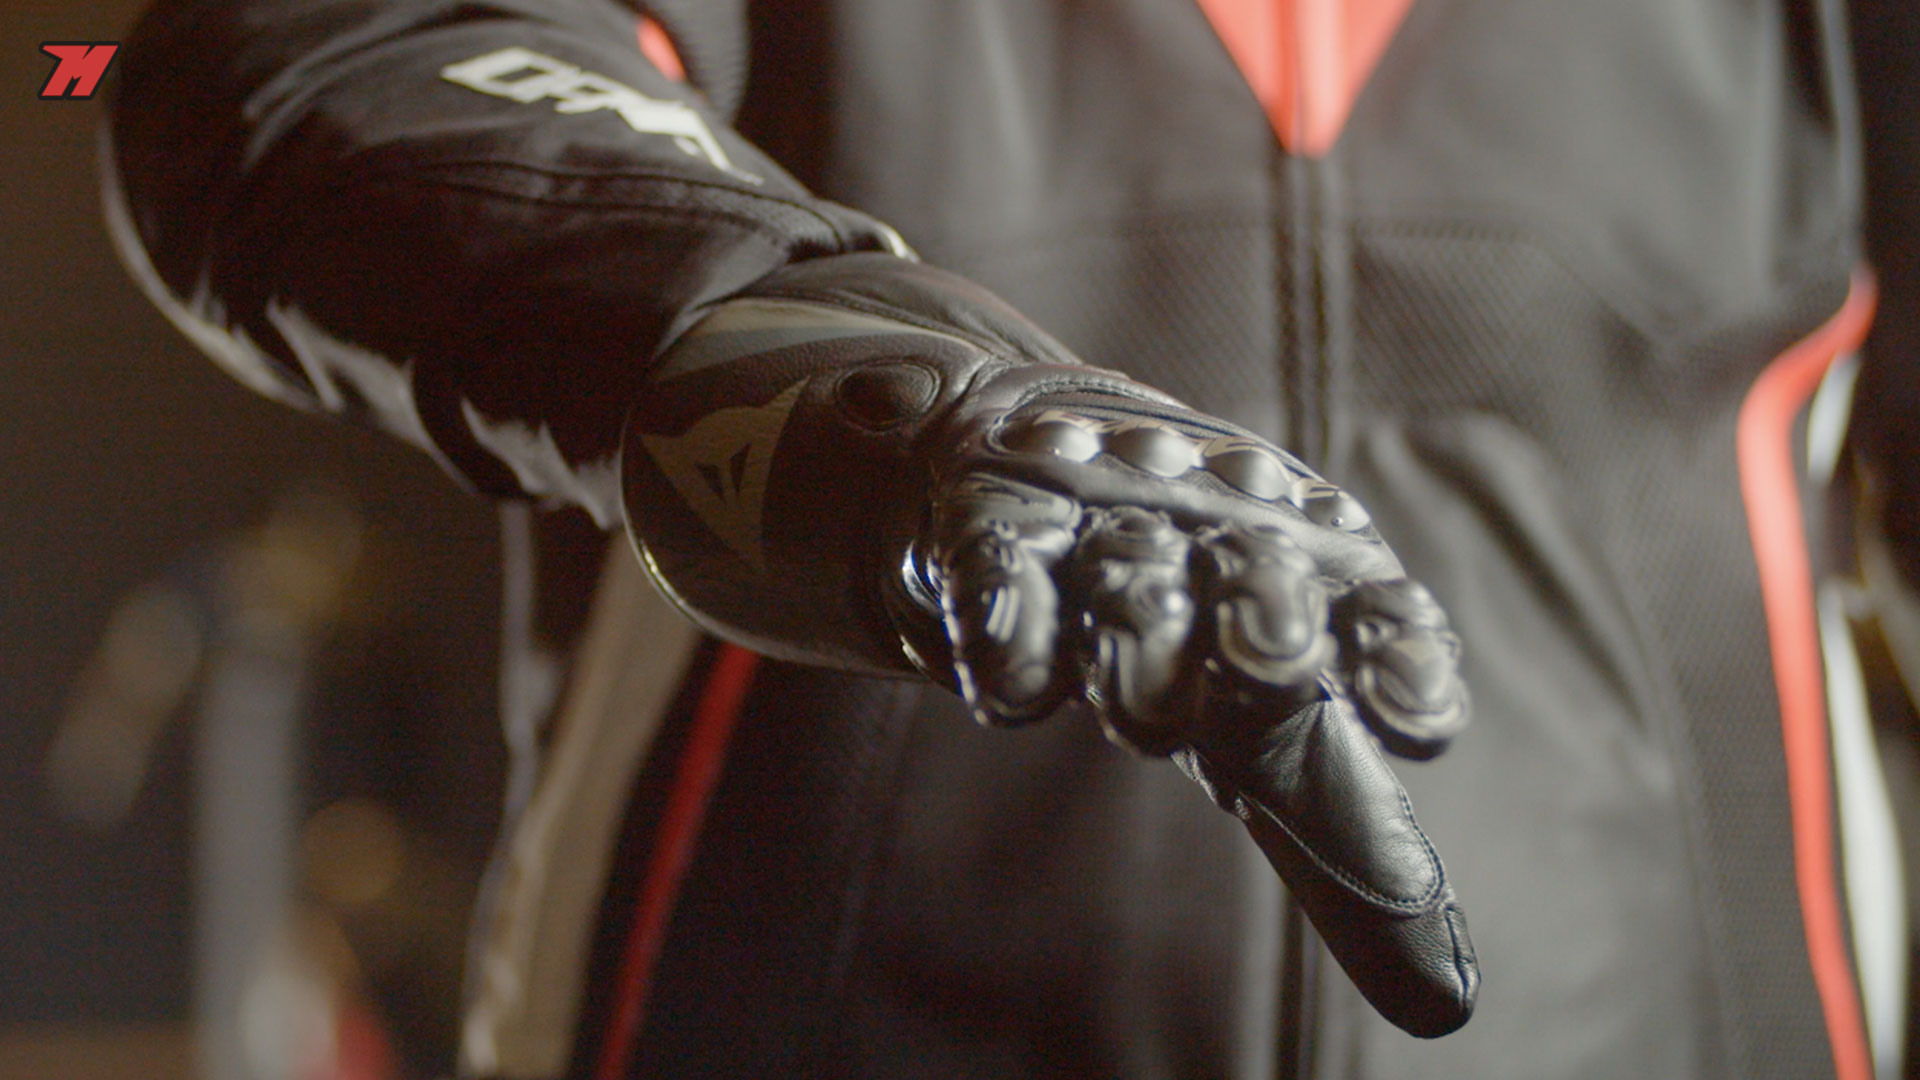 Los 7 mejores guantes de moto para verano ventilados · Motocard